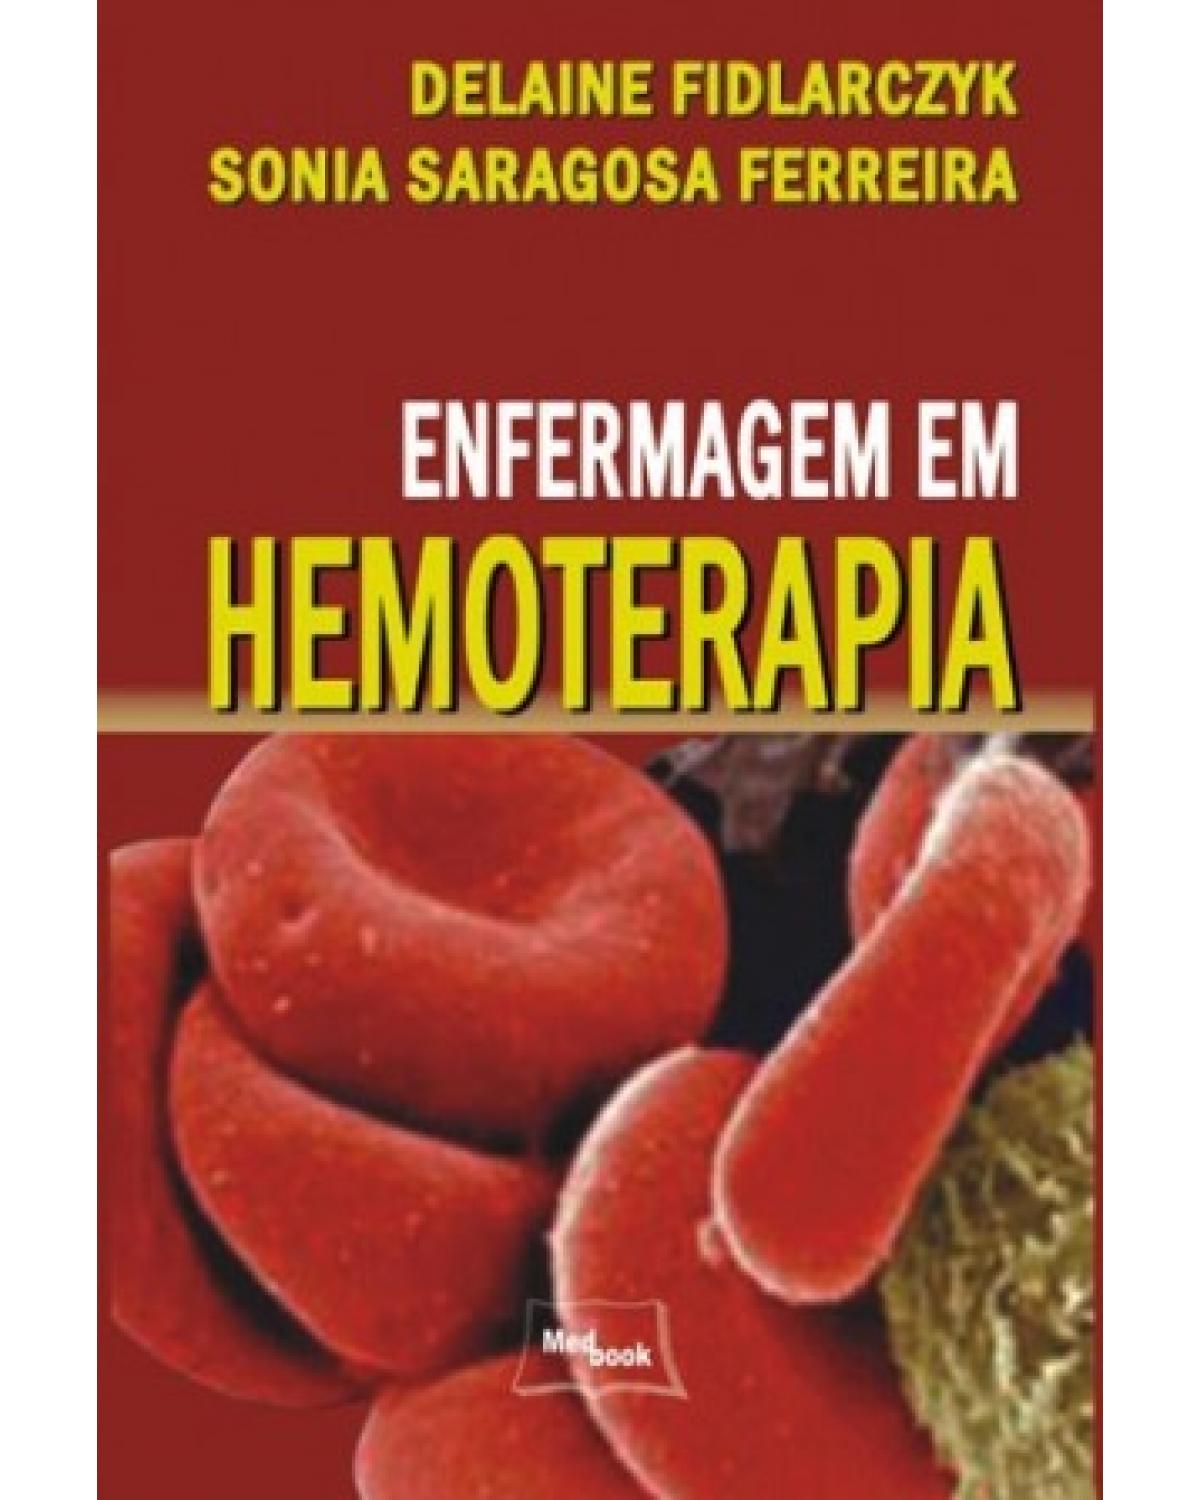 Enfermagem em hemoterapia - 1ª Edição | 2008